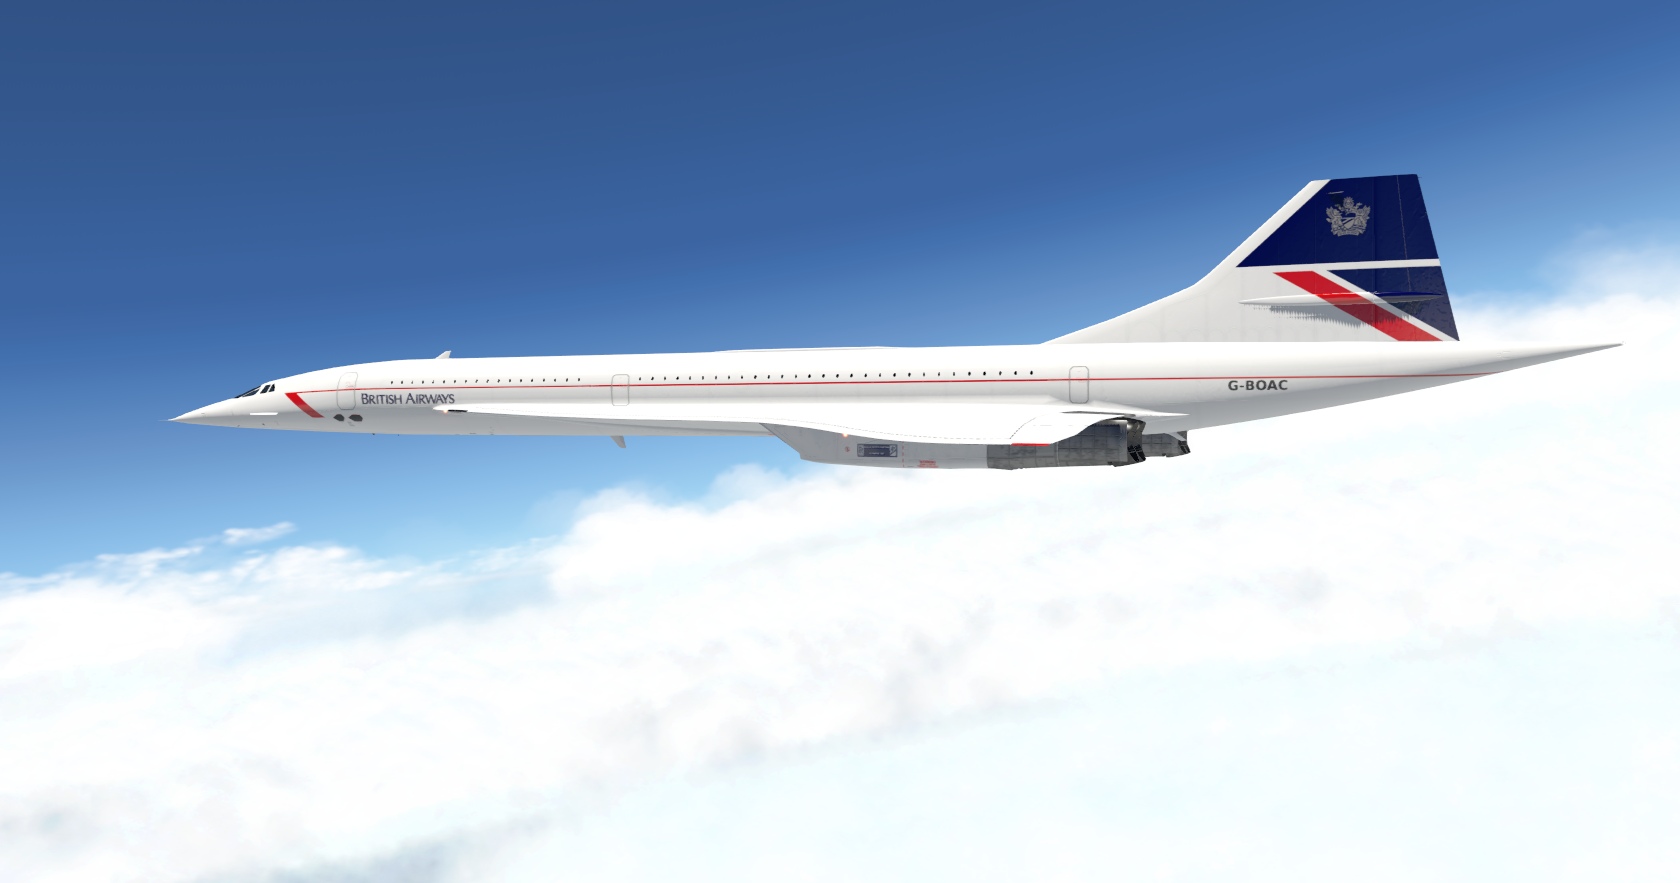 The Colimata Concorde for X-Plane 11